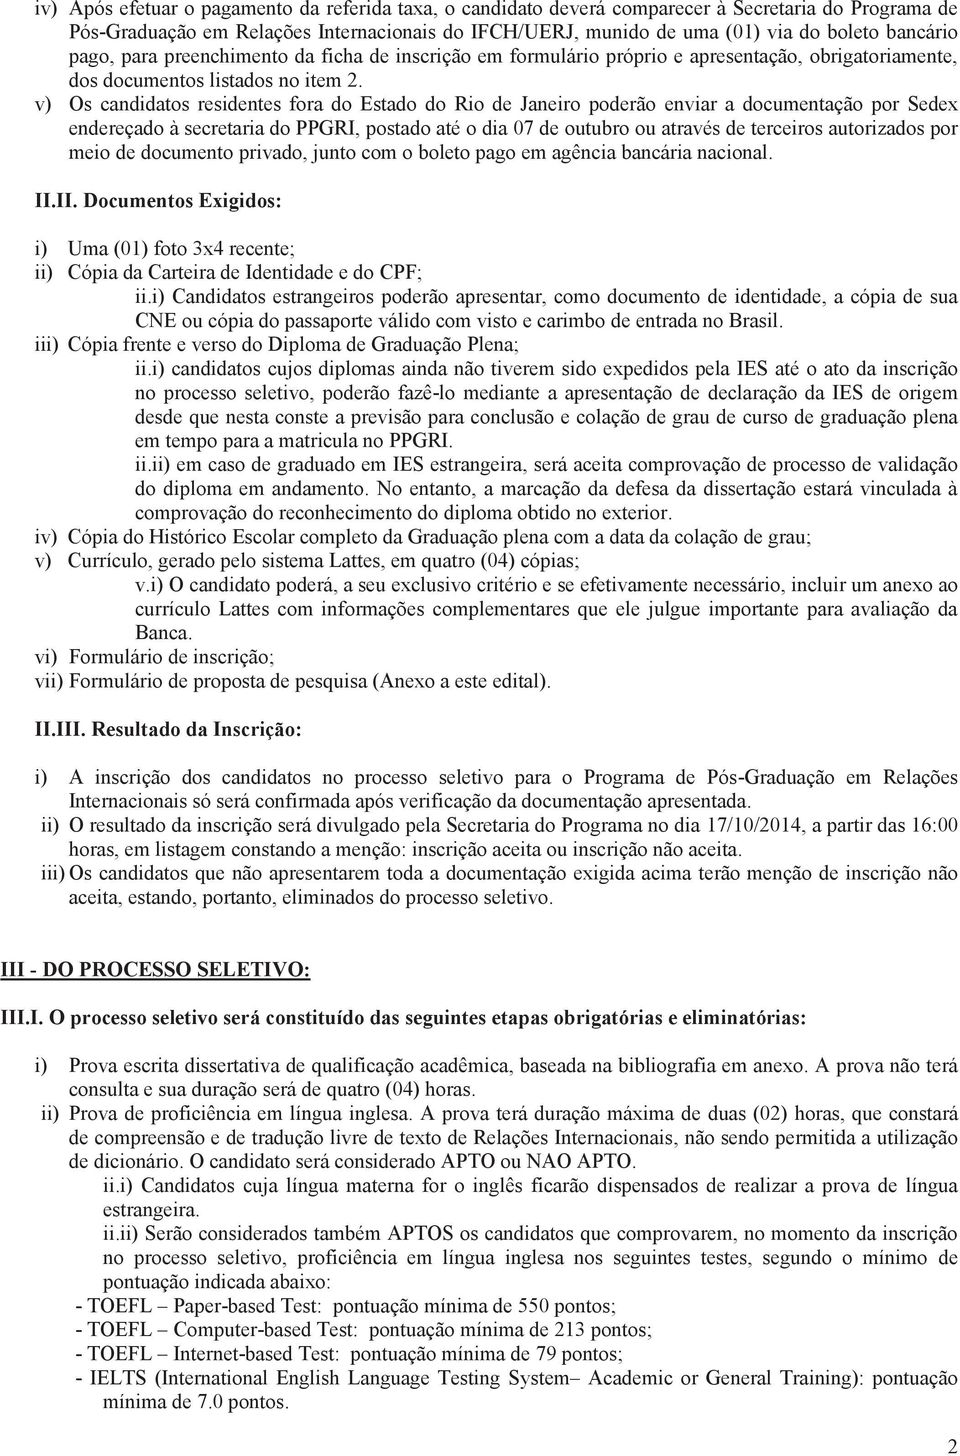 v) Os candidatos residentes fora do Estado do Rio de Janeiro poderão enviar a documentação por Sedex endereçado à secretaria do PPGRI, postado até o dia 07 de outubro ou através de terceiros